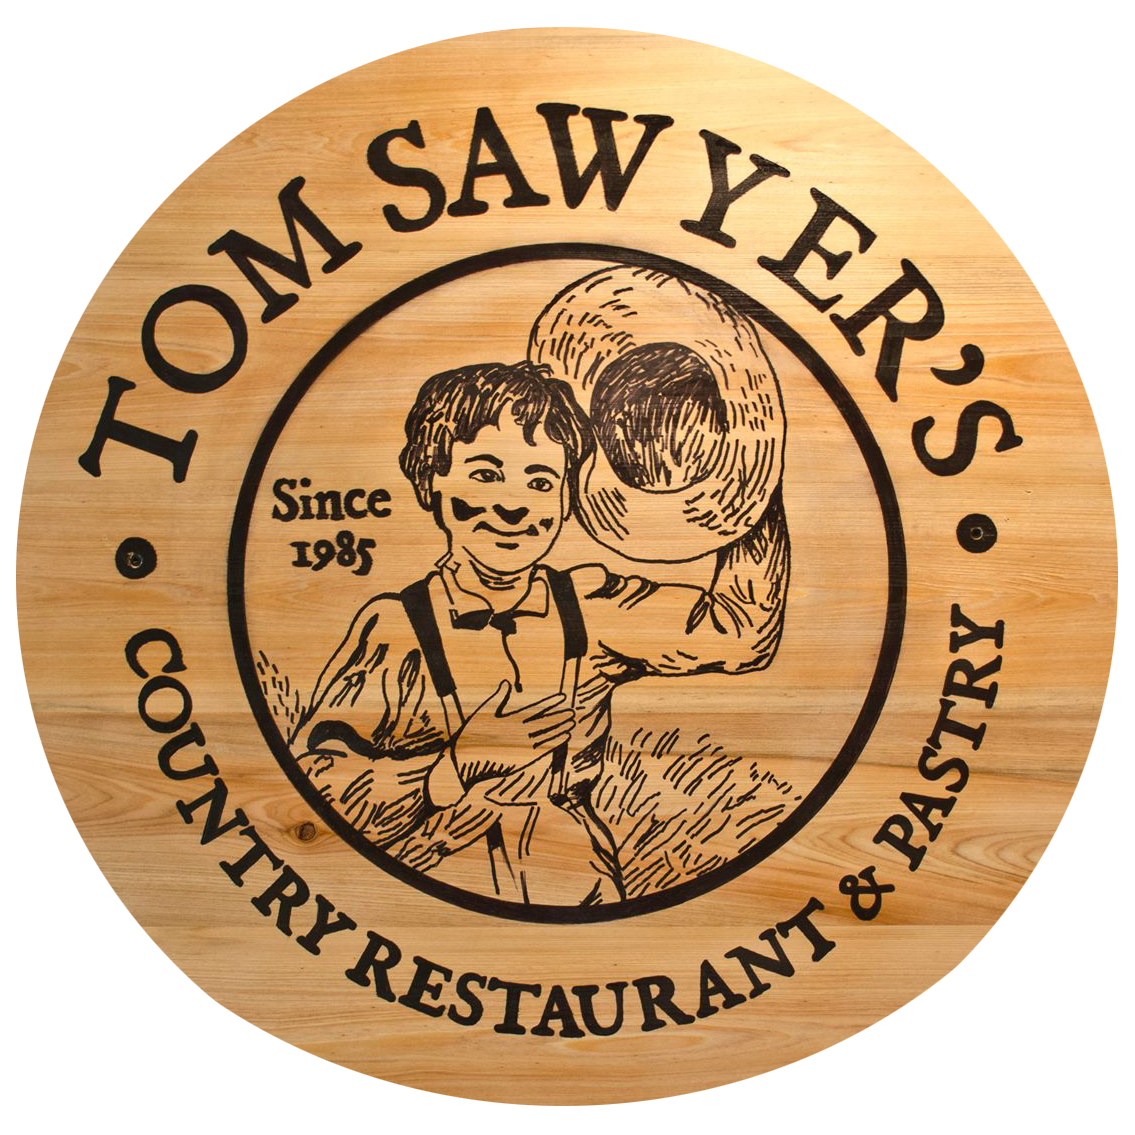 Tom Sawyer's Country Restaurant 